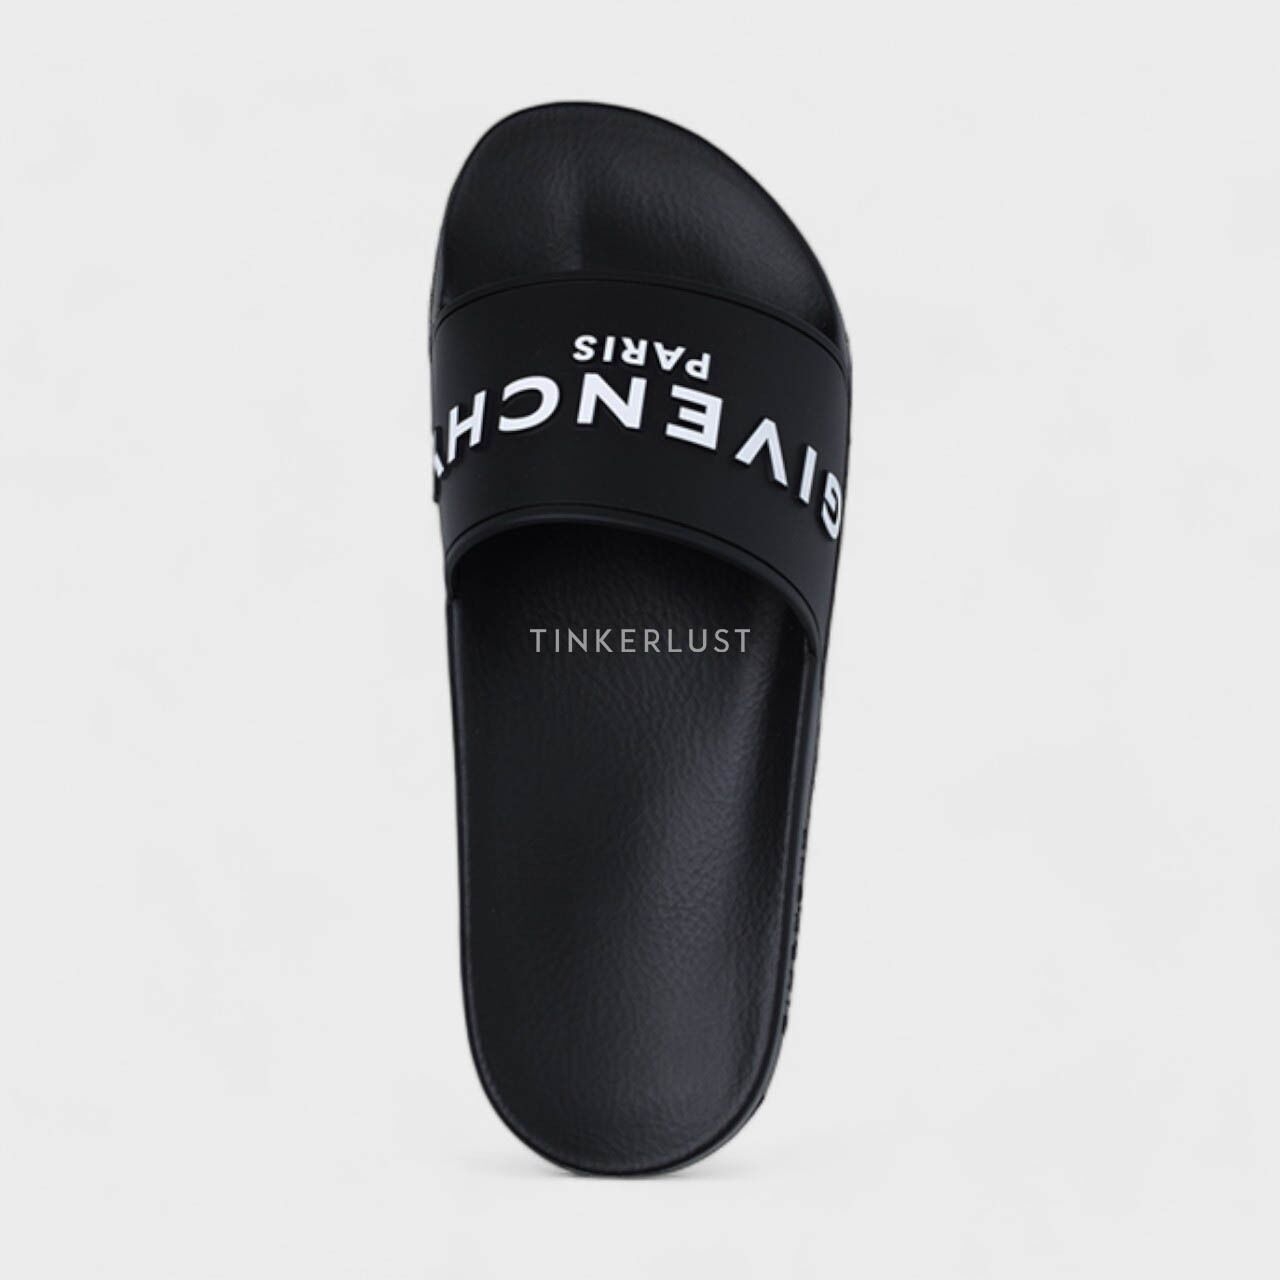 Givenchy Women Logo Slides in Black Sandals